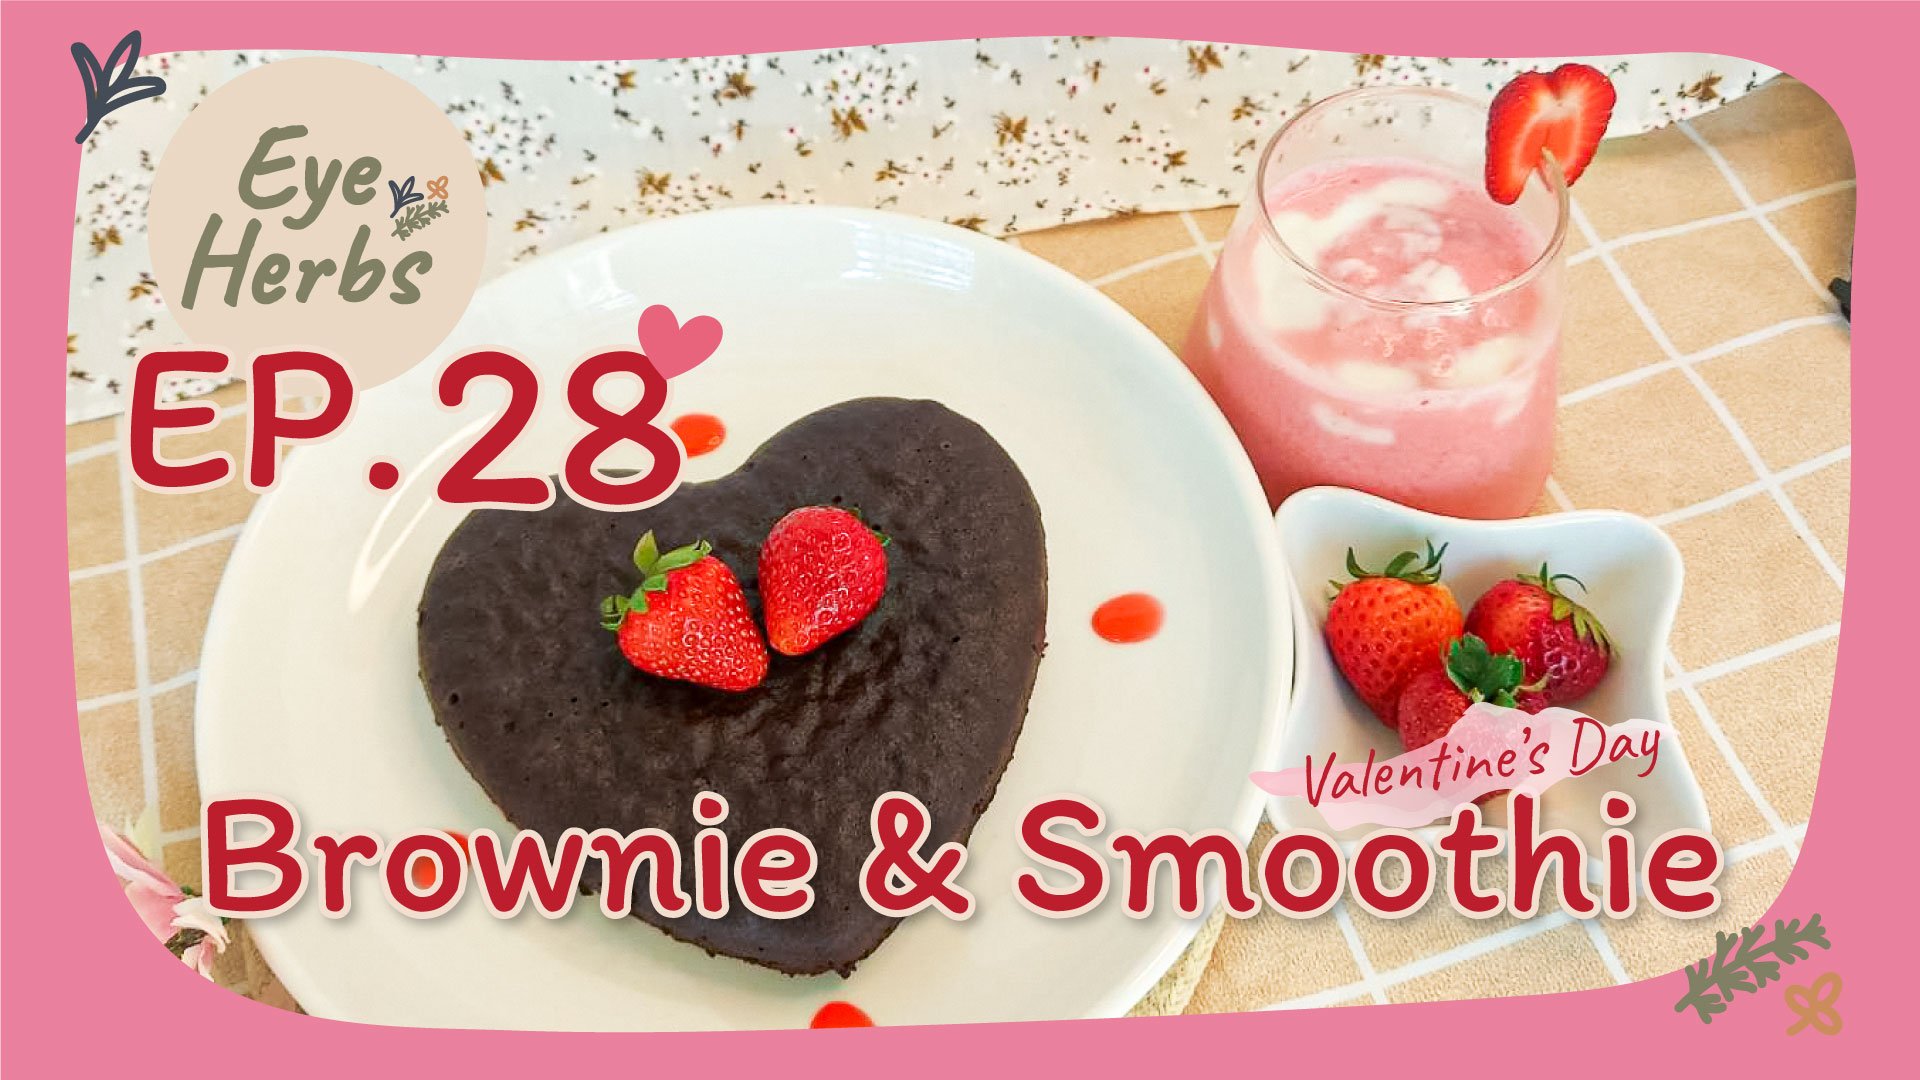 Brownie & Smoothie-EyeHerbs Ep.28